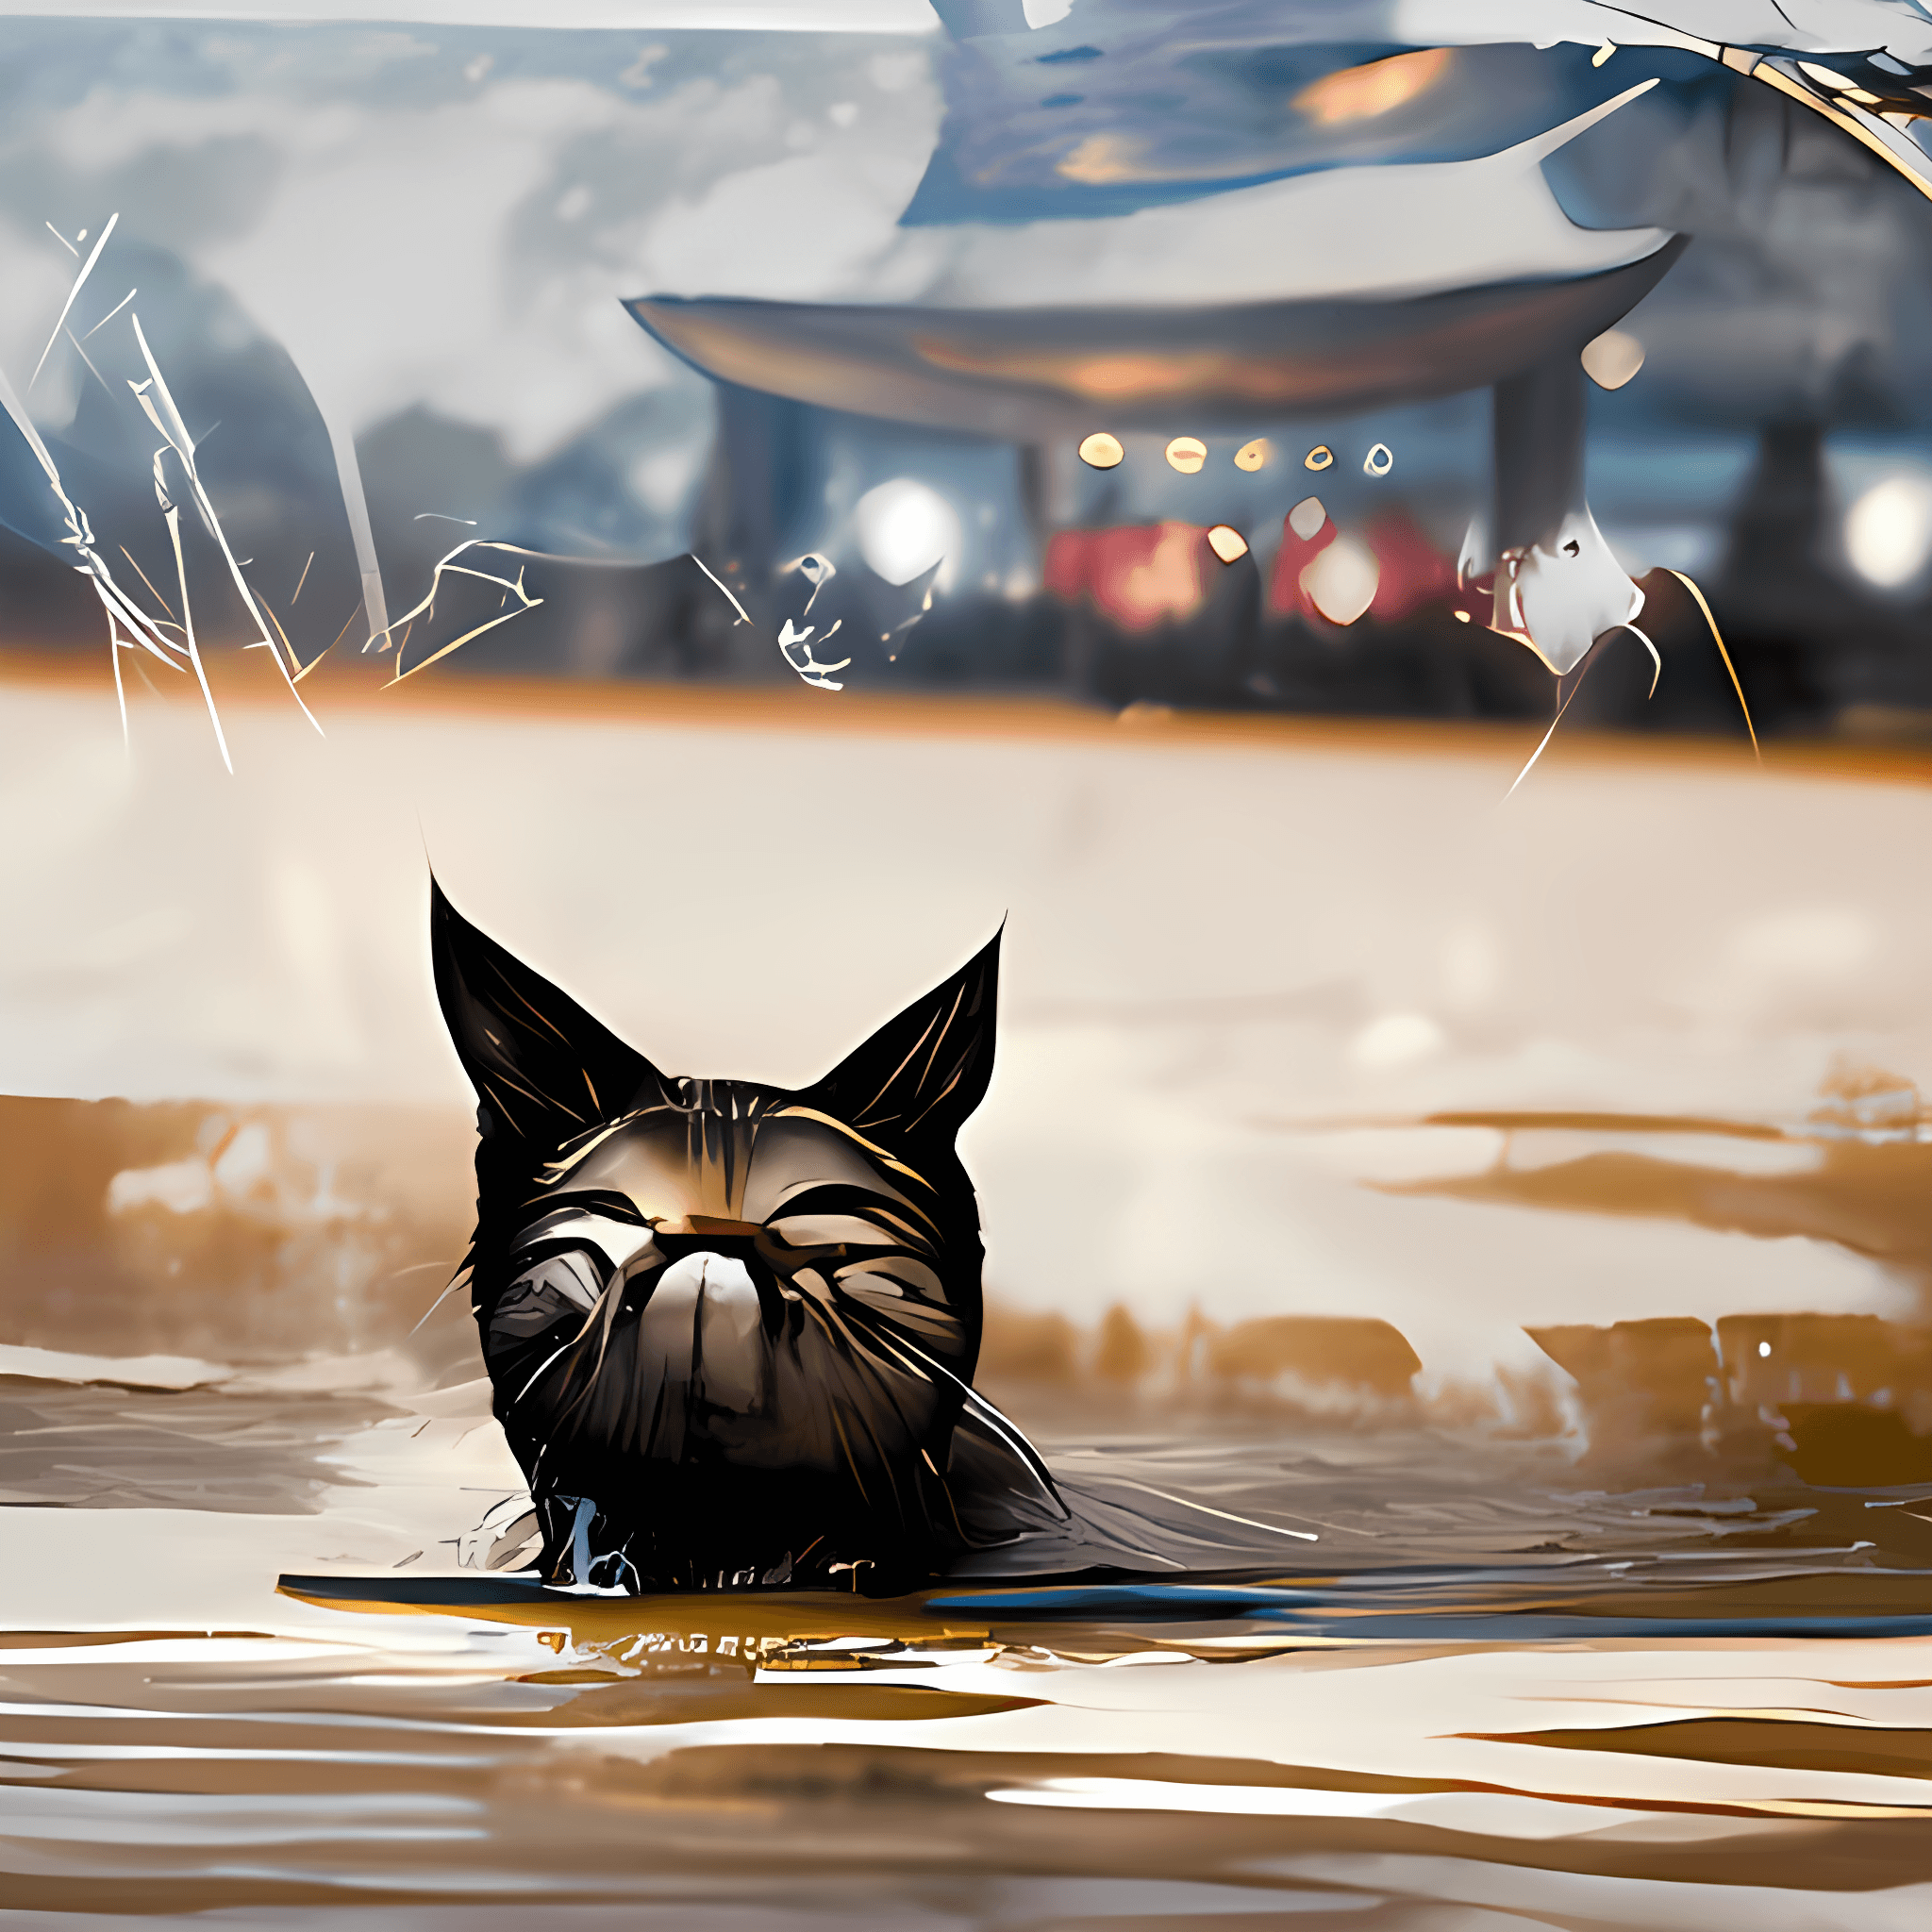 Magical cat of Japan